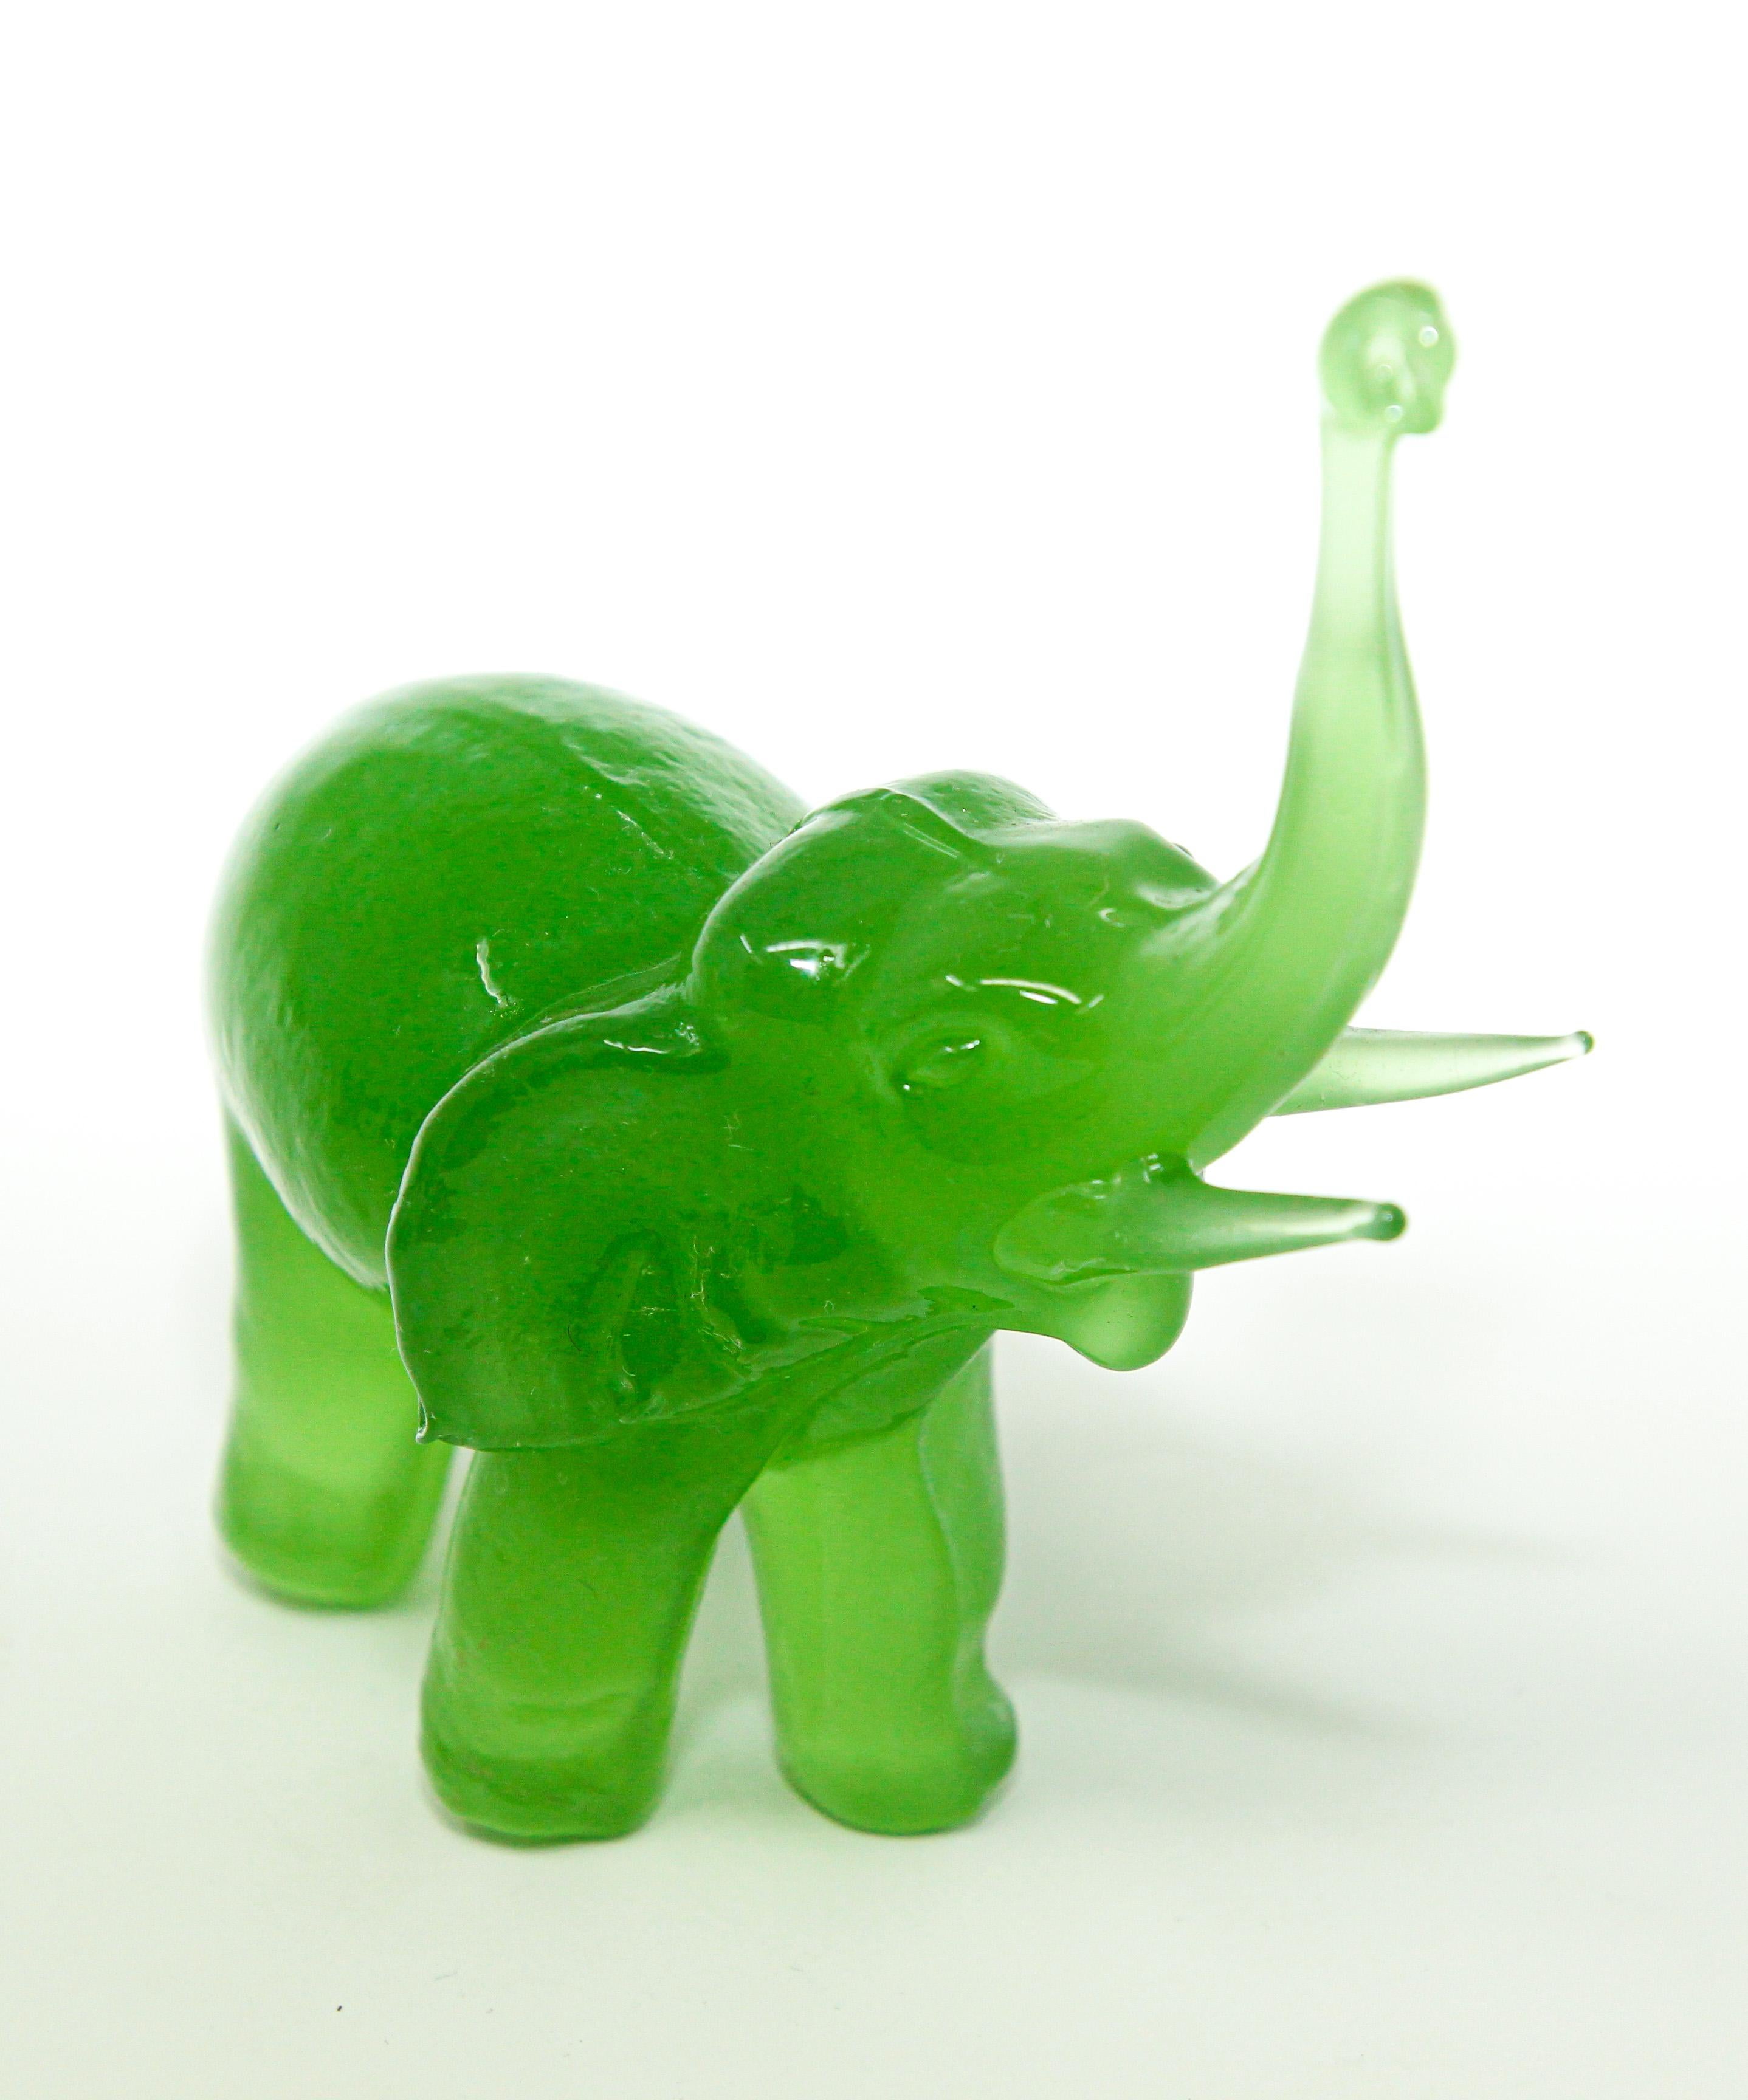 glass elephants figurines